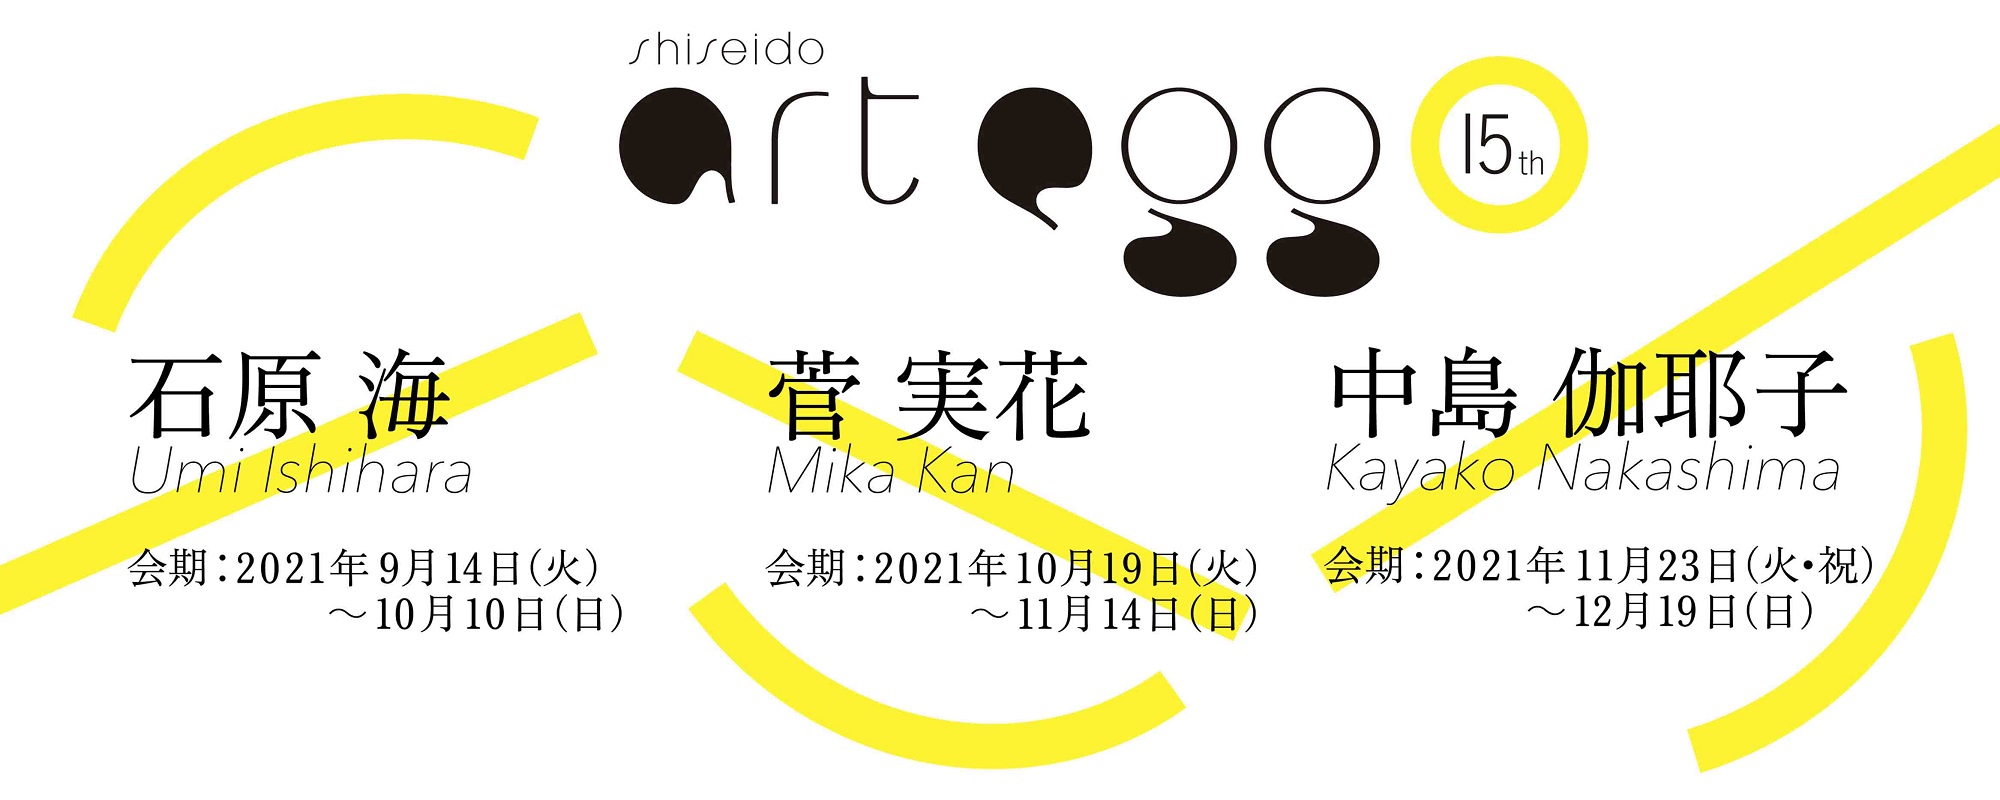 "The 15th shiseido art egg"